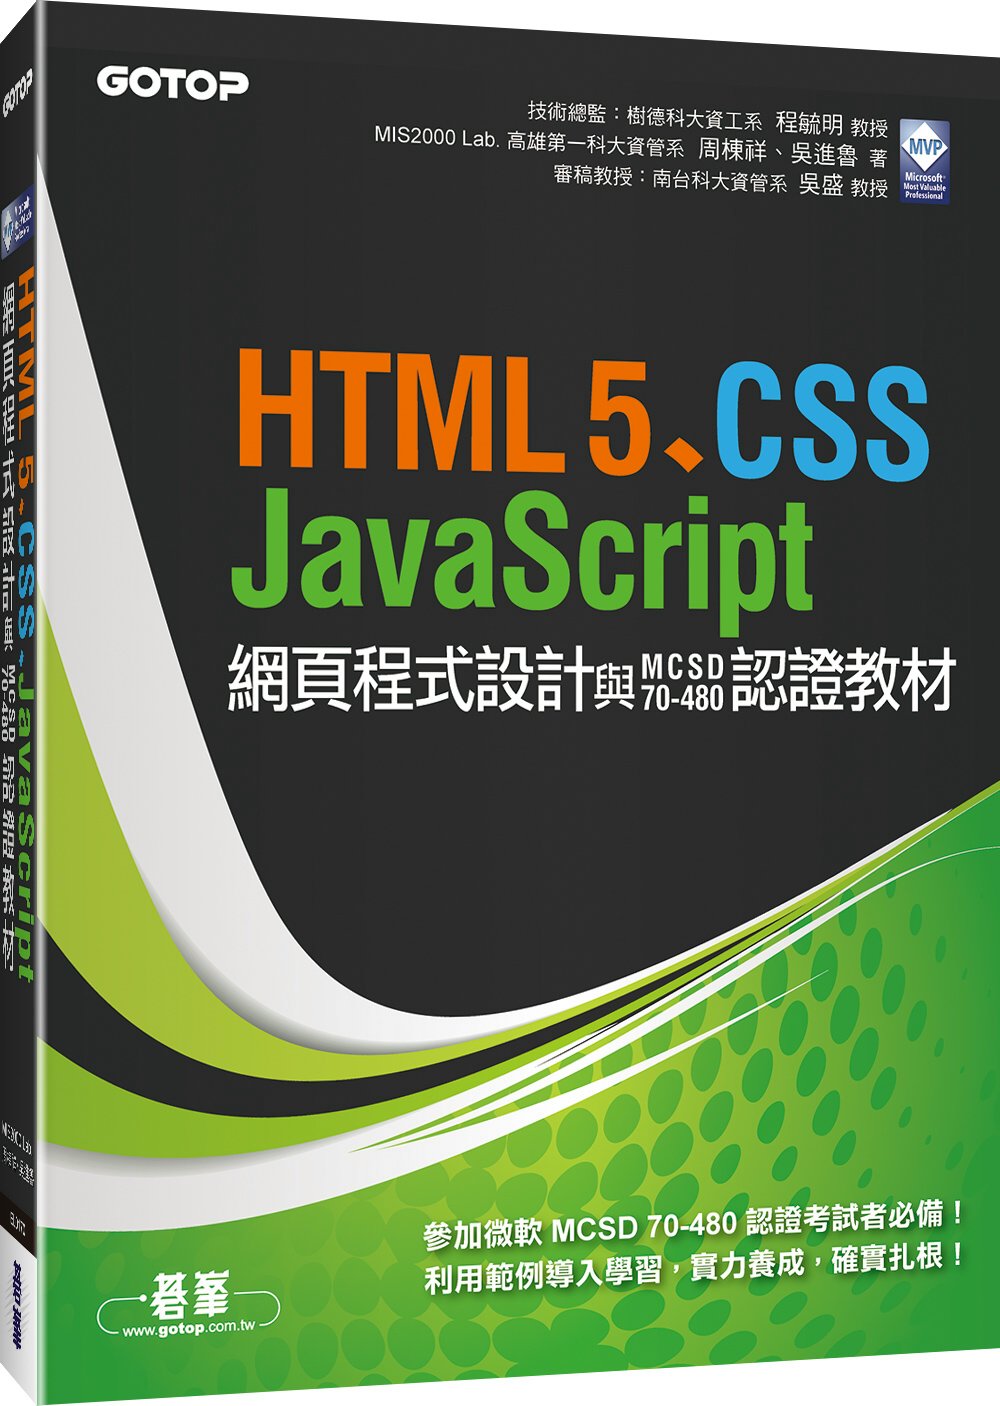 微軟MVP的HTML5、CSS、JavaScript網頁程式設計與MCSD 70-480認證教材